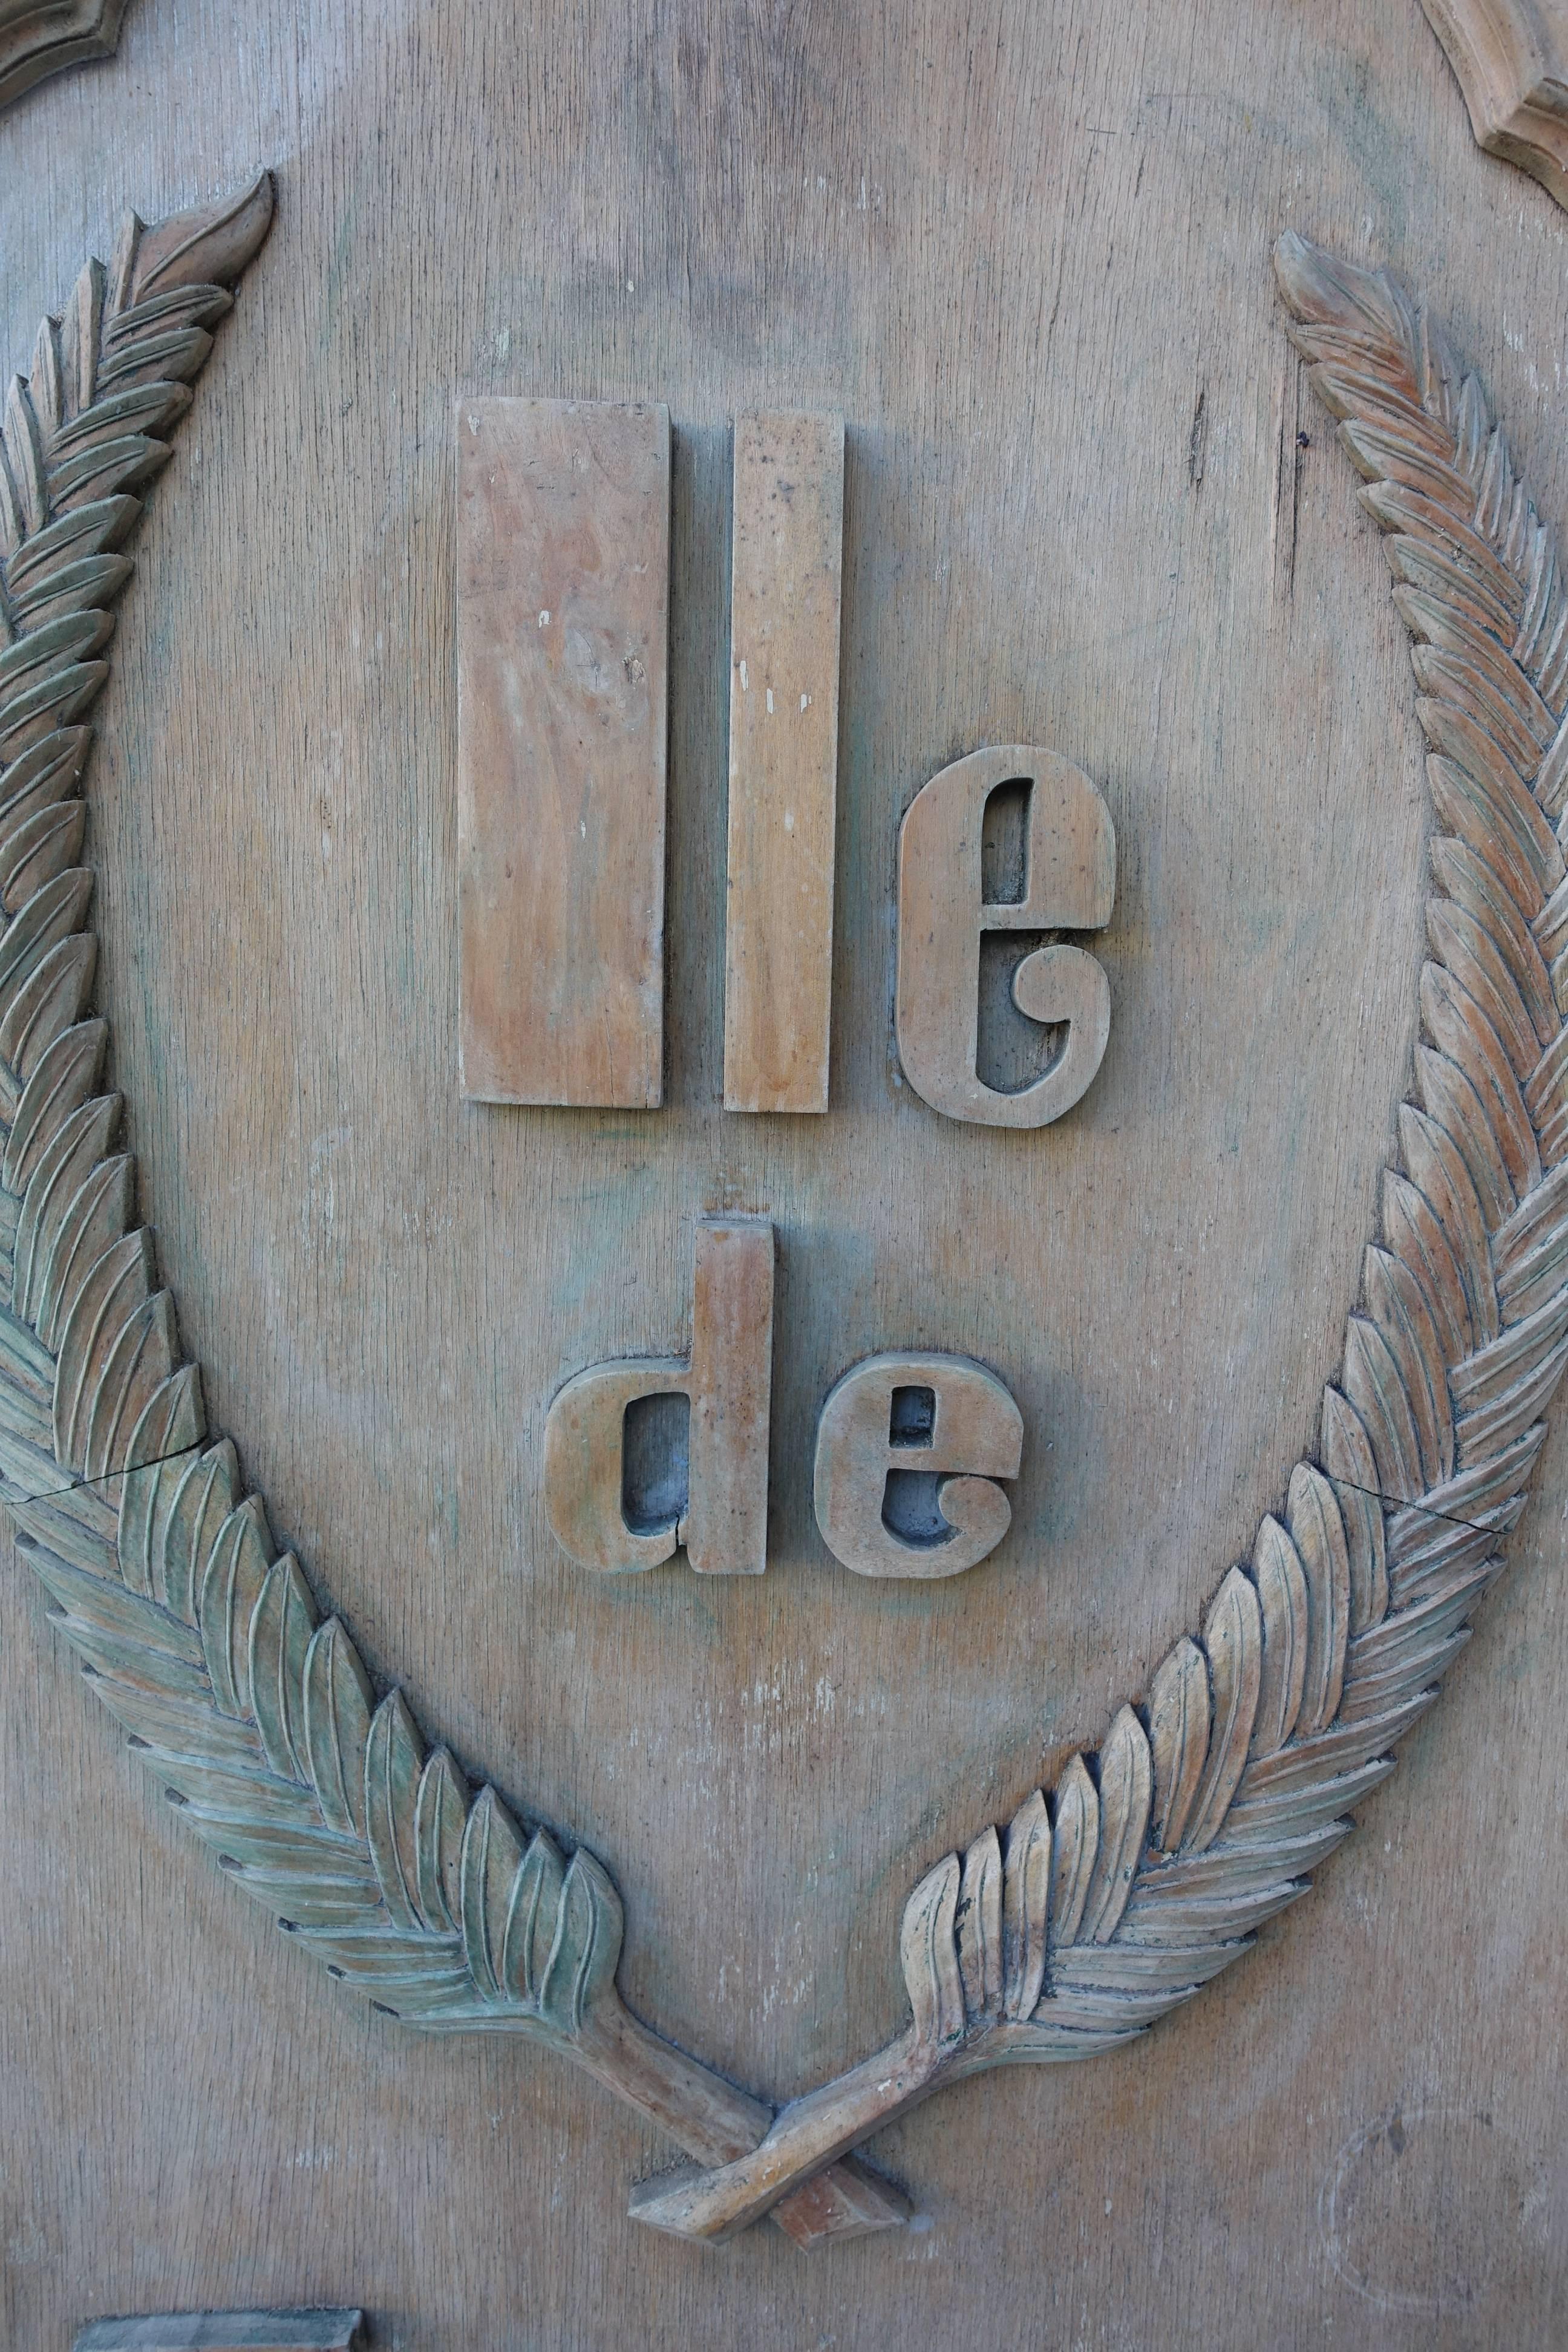 Monumental scaled carved wood "lle de France" sign.